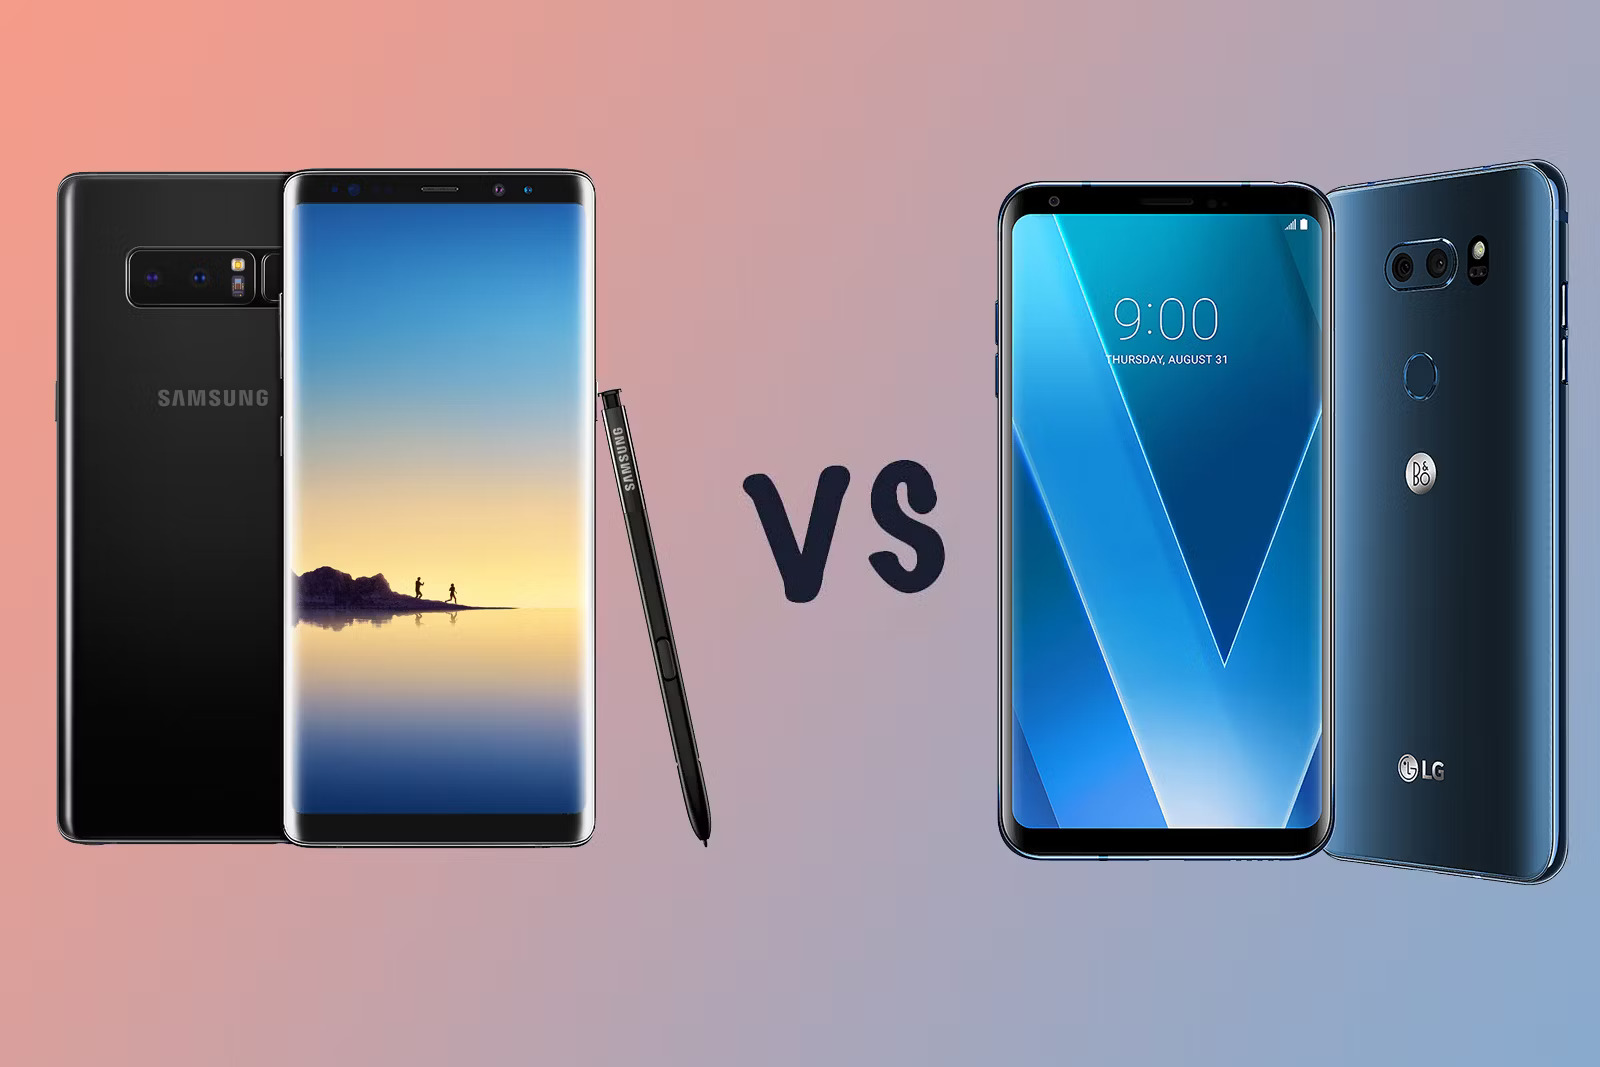 lg-v30-vs-galaxy-note-8-smartphone-specs-comparison